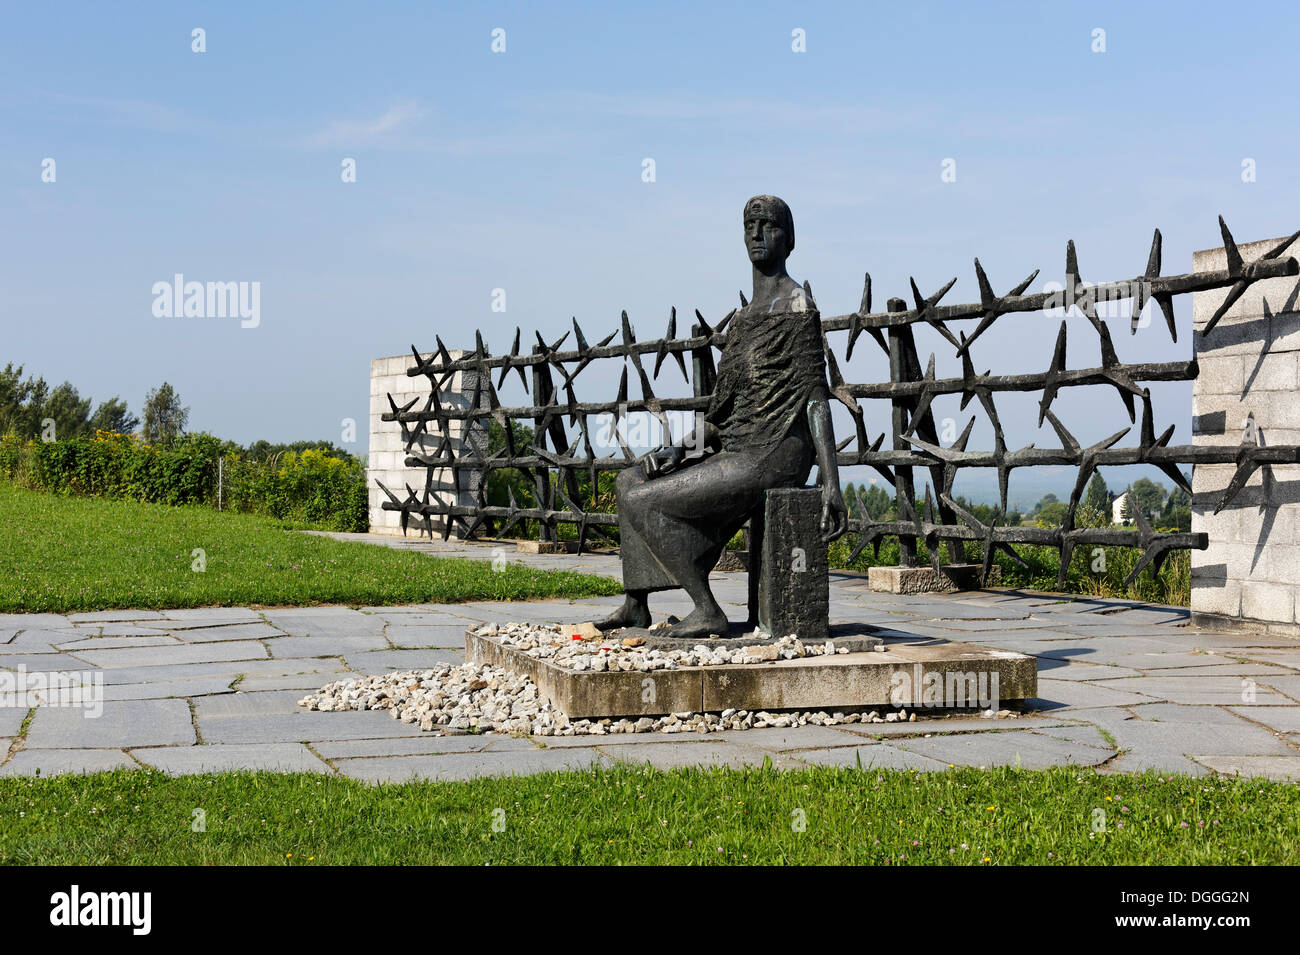 Monument commémoratif, de l'ex-RDA, l'Allemagne de l'Est, dans le Monument Park, le Camp de concentration de Mauthausen, Perg, Haute Autriche Banque D'Images